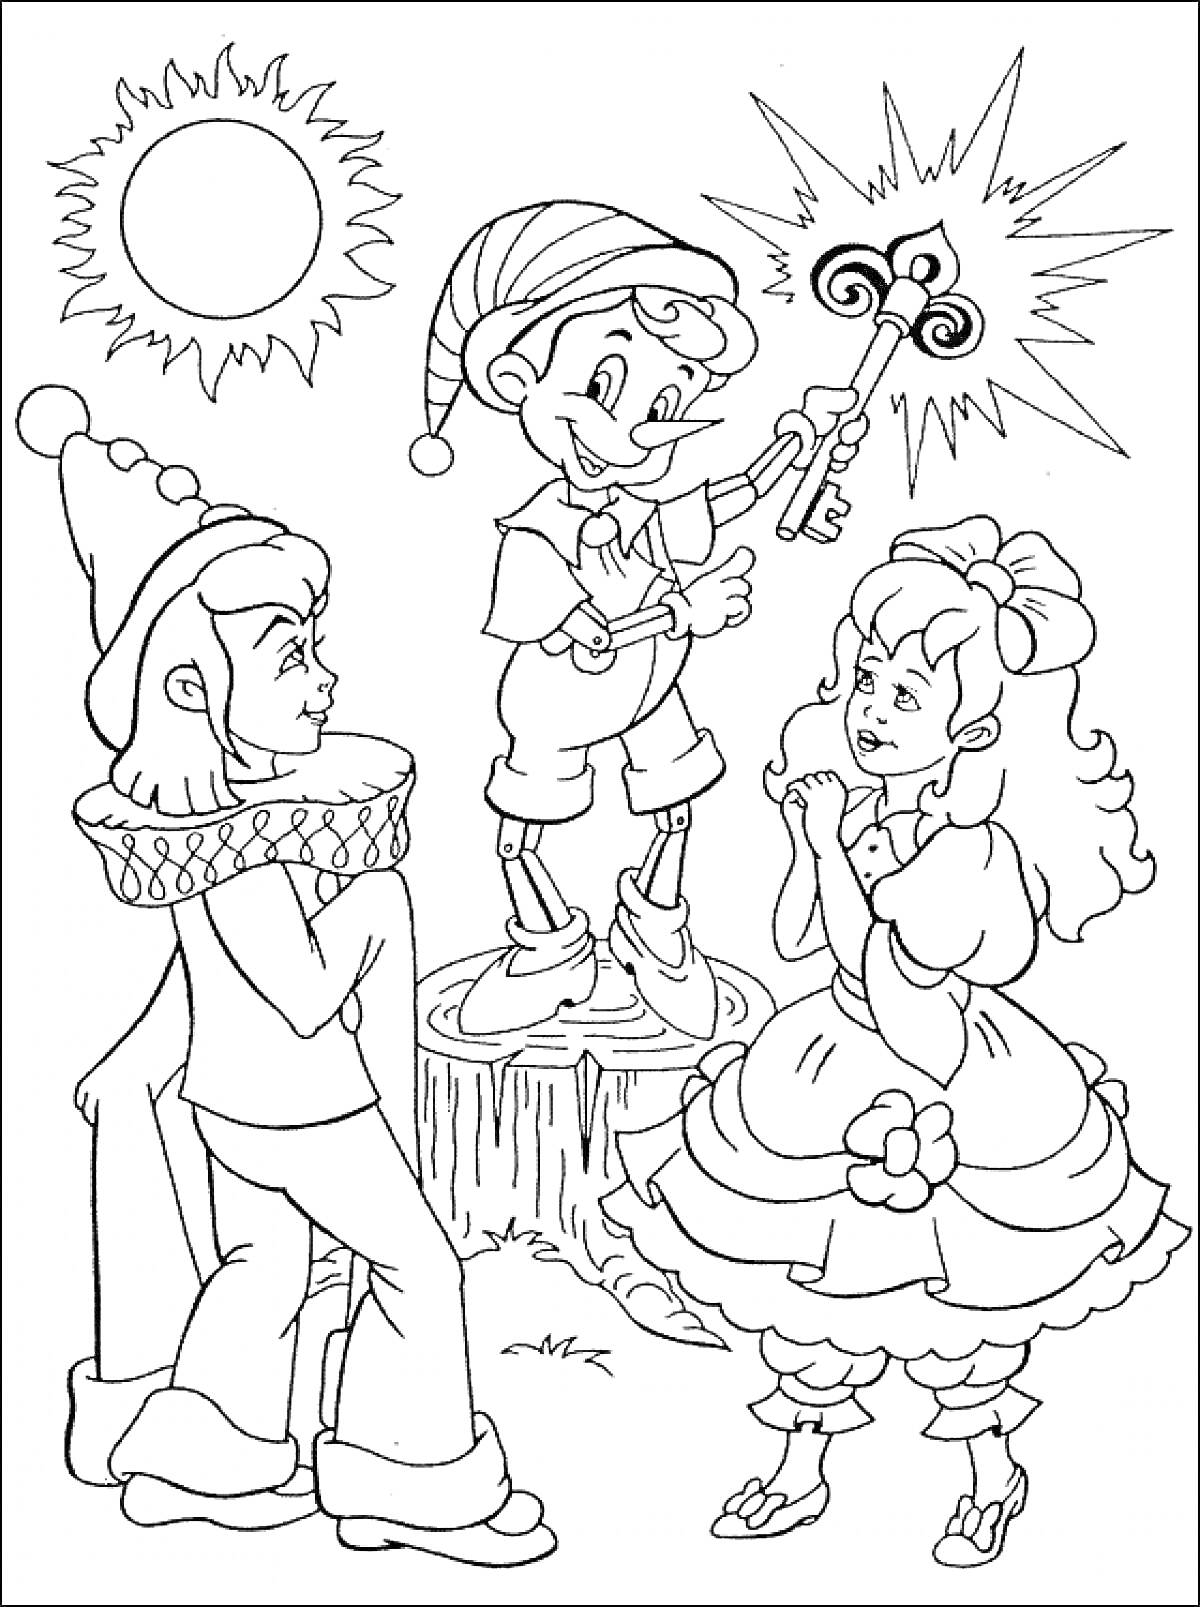 РаскраскаМальвина, Пьеро и Буратино с ключом на пеньке под солнцем